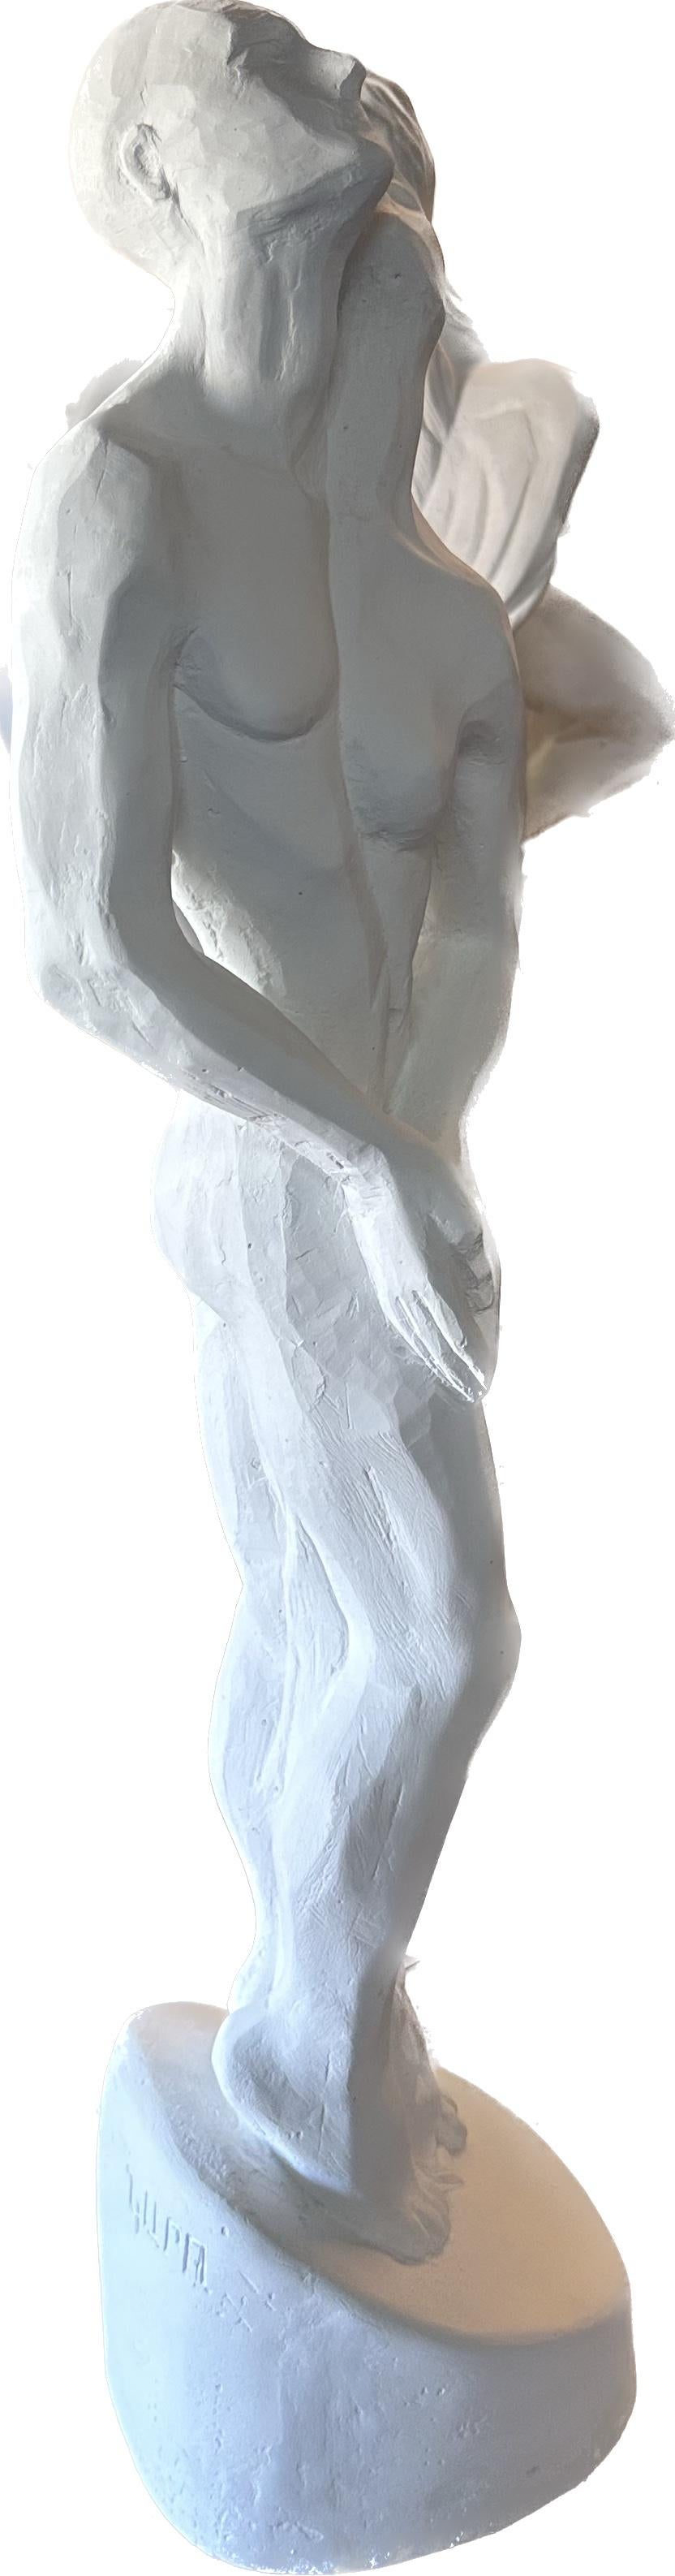 Sculpture inséparable, en pierre hydro fabriquée à la main par Garo, unique en son genre - Gris Figurative Sculpture par Karapet Balakeseryan  (Garo)